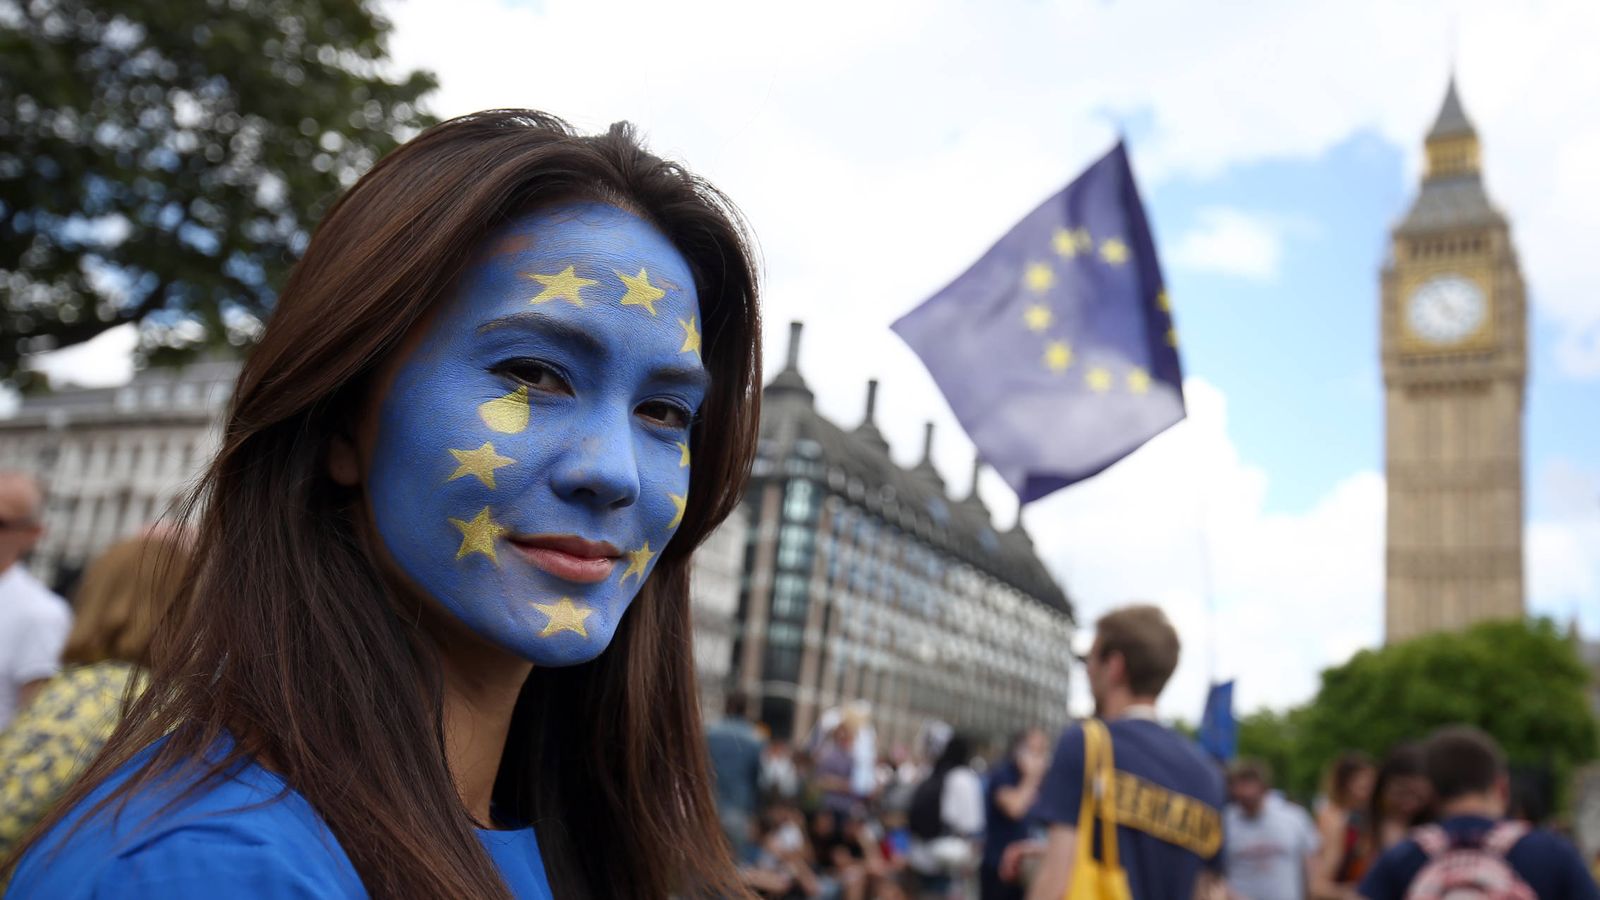 Foto: Una mujer con una bandera de la UE pintada en la cara posa durante una protesta contra el Brexit, en Londres, el 2 de julio de 2016 (Reuters).